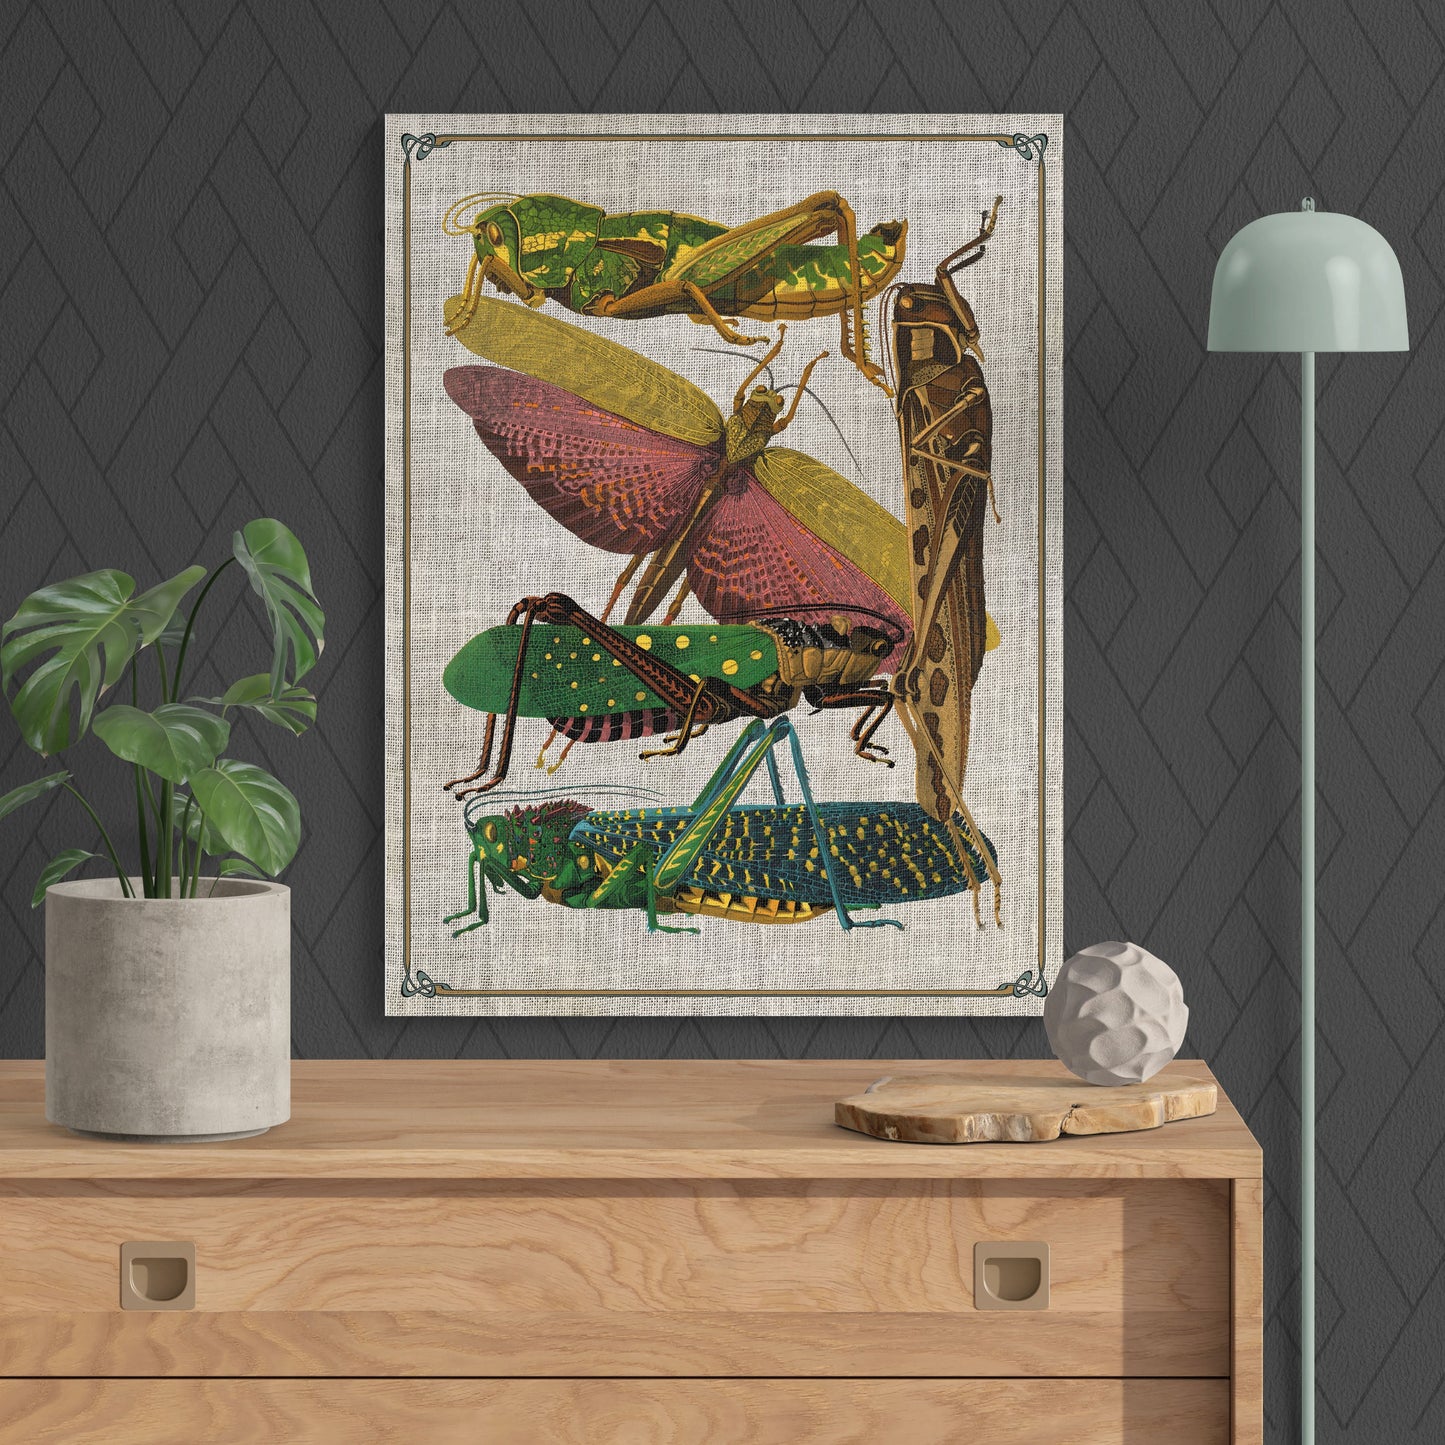 Antique Art Nouveau Grasshopper Insect Collage - Retro Reverence